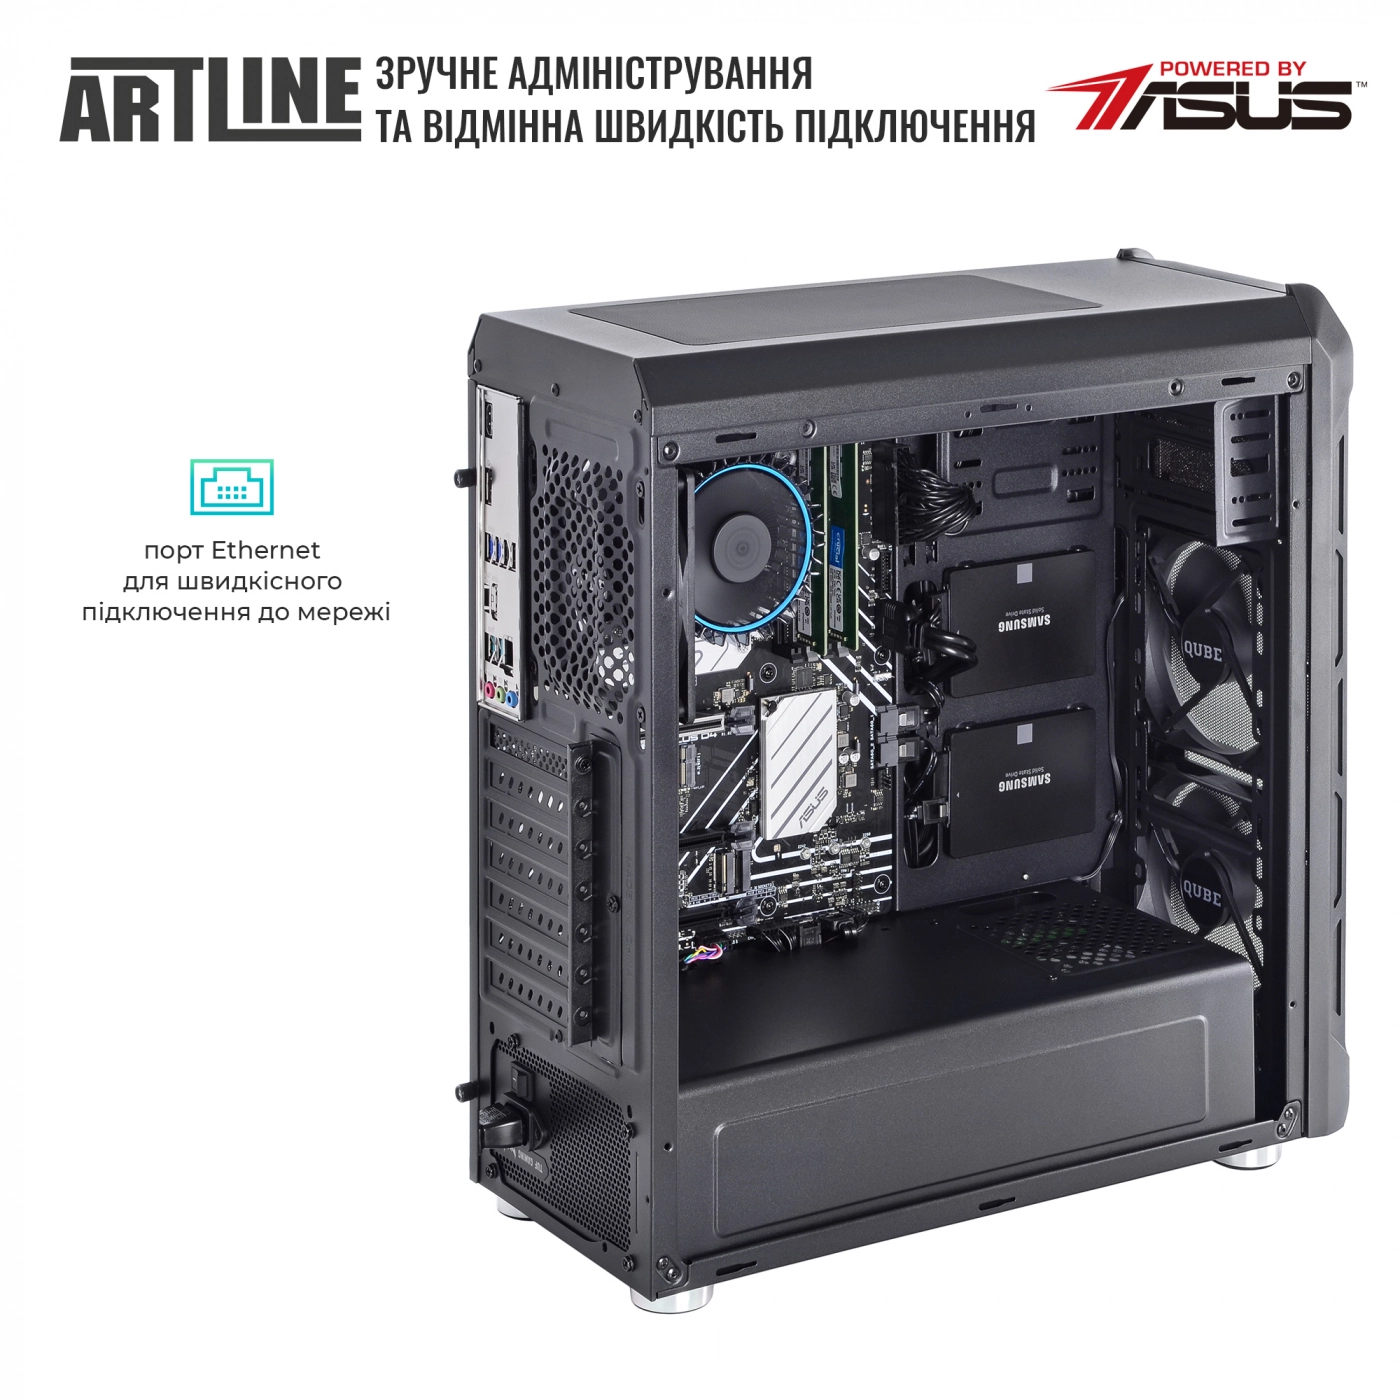 Купить Сервер ARTLINE Business T15v20 - фото 6